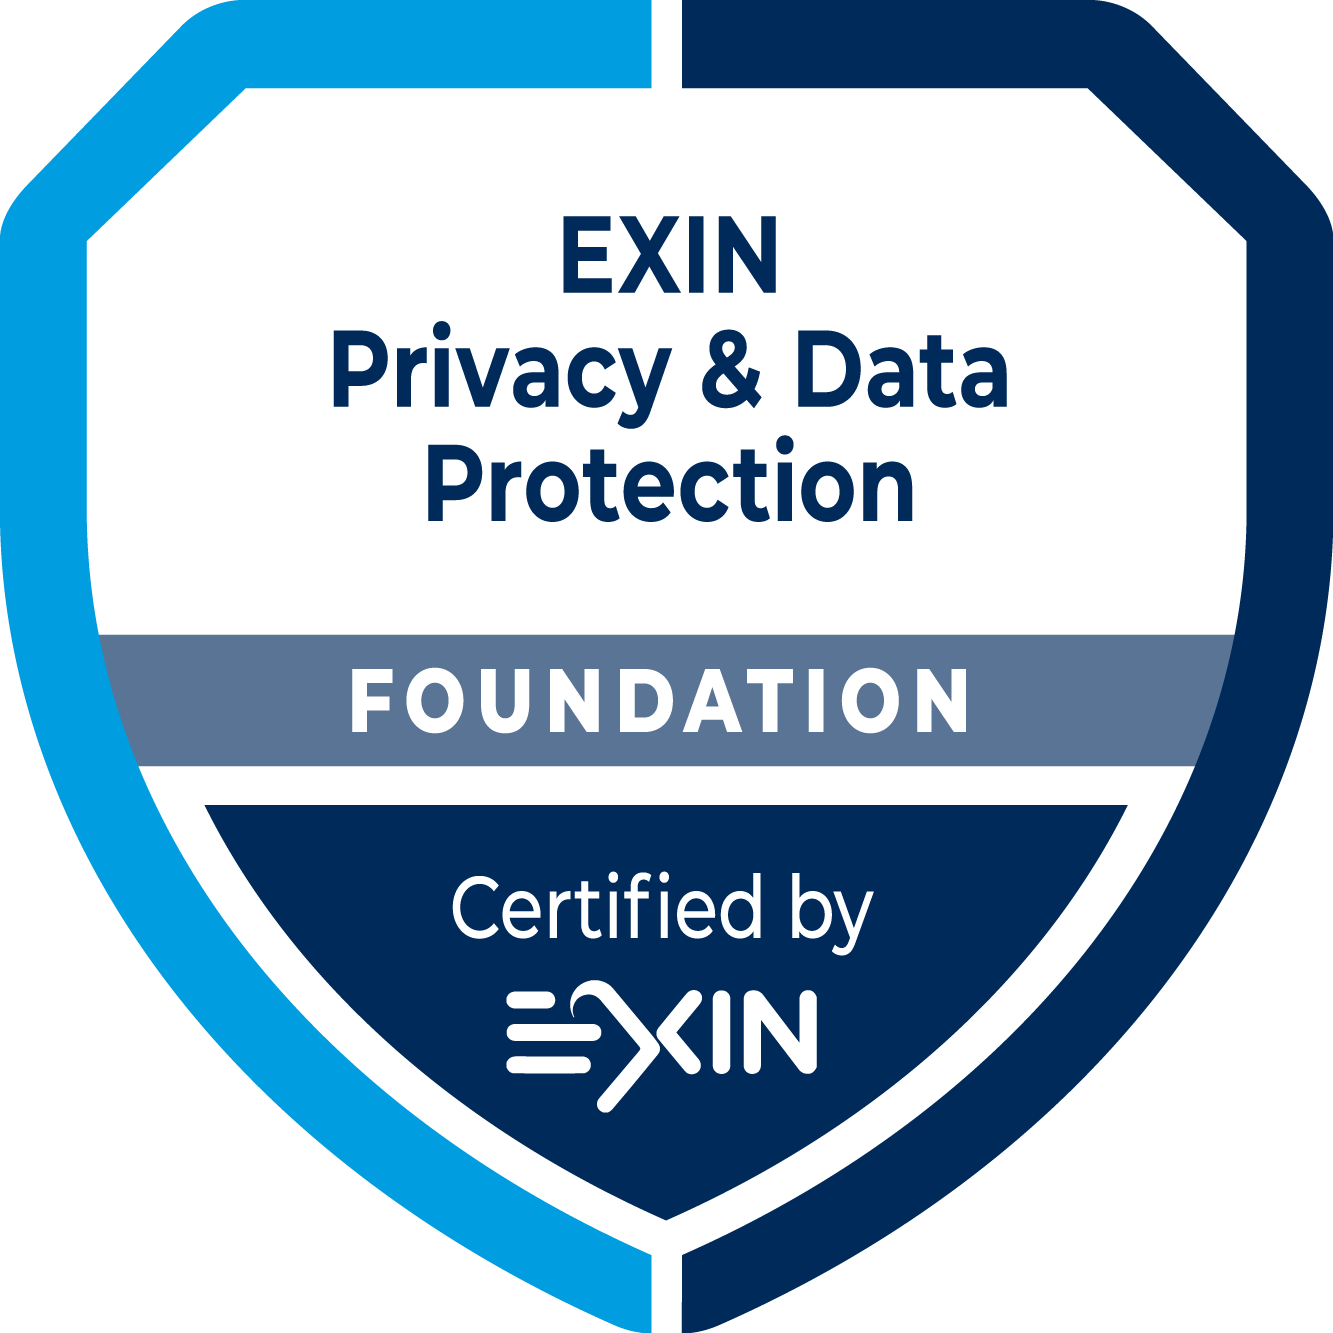 EXIN Privacy & Data Protection Foundation cobre os principais assuntos relacionados à proteção de dados pessoais. Os candidatos beneficiam de uma certificação concebida para validar os conhecimentos necessários para ajudar a garantir a conformidade com o Regulamento Geral de Proteção de Dados.